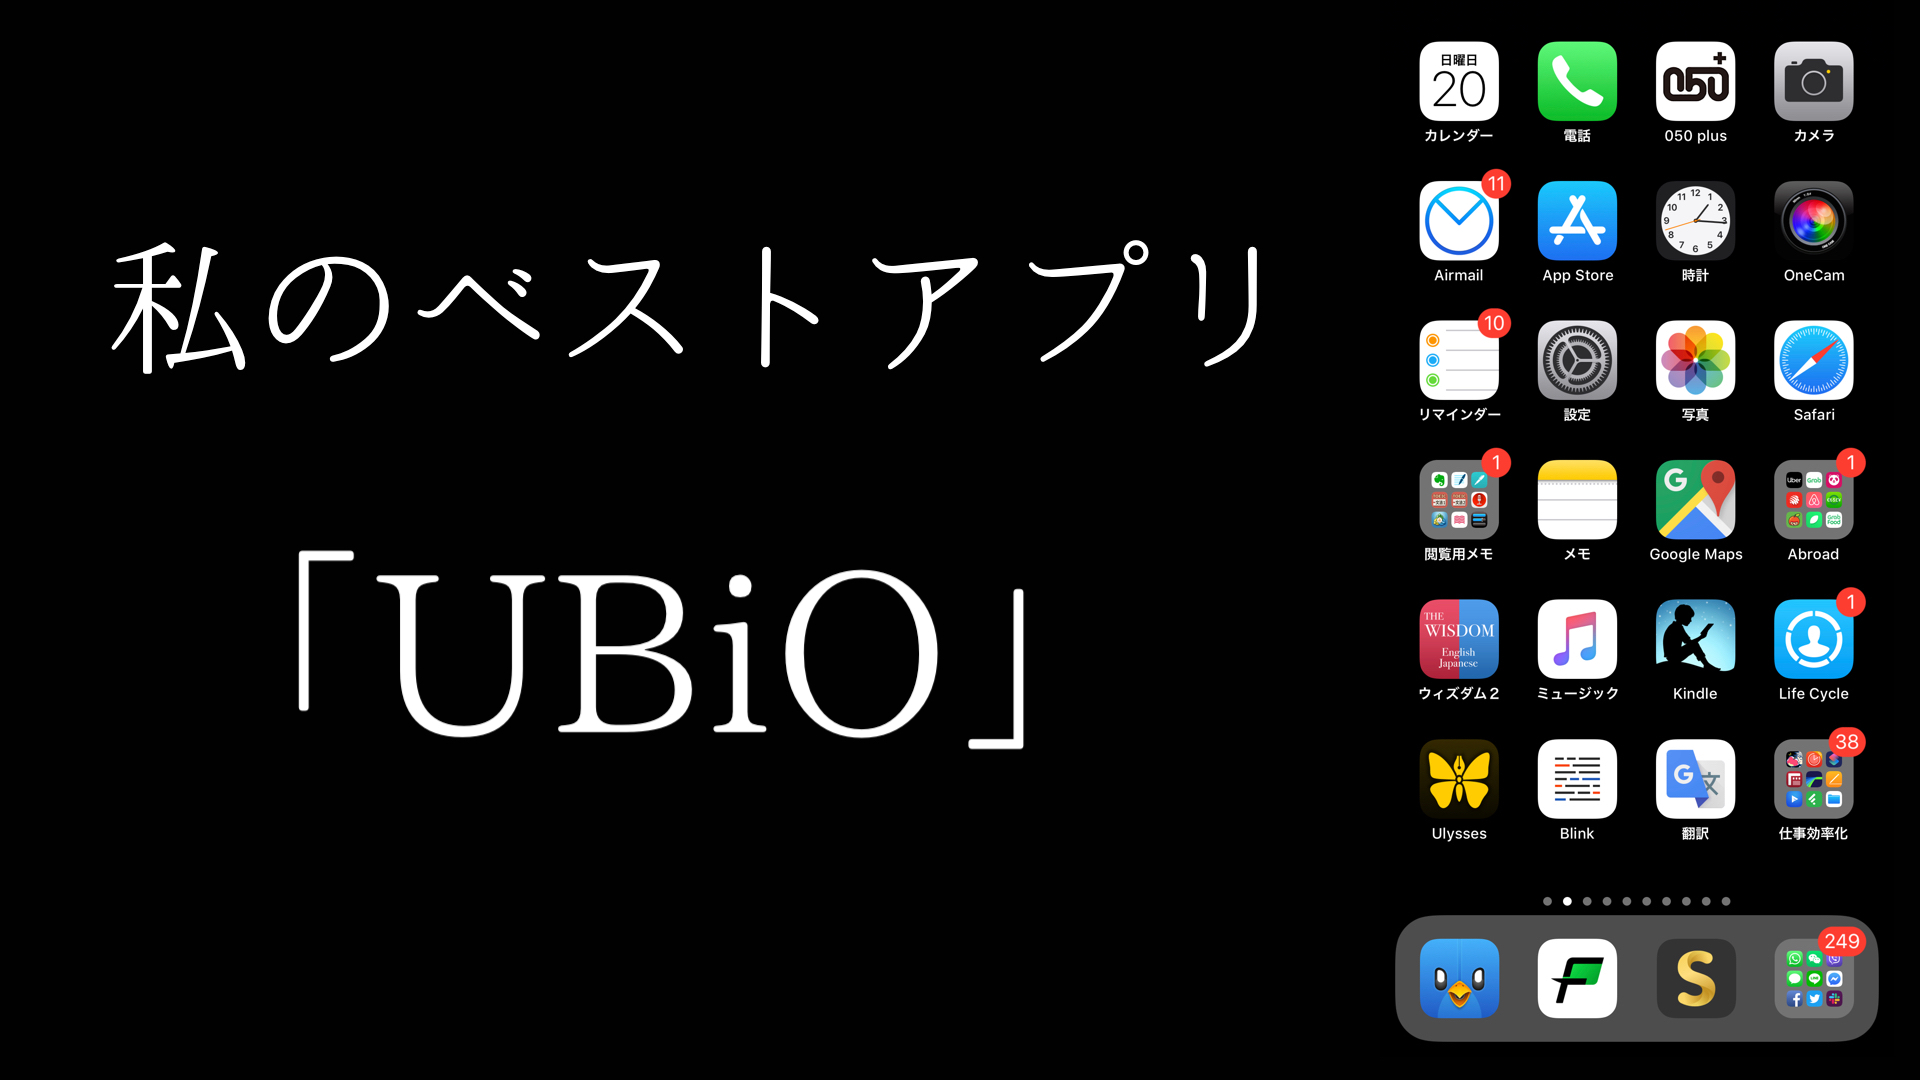 私のベストアプリVol.3「UBiO」by 高校一年生